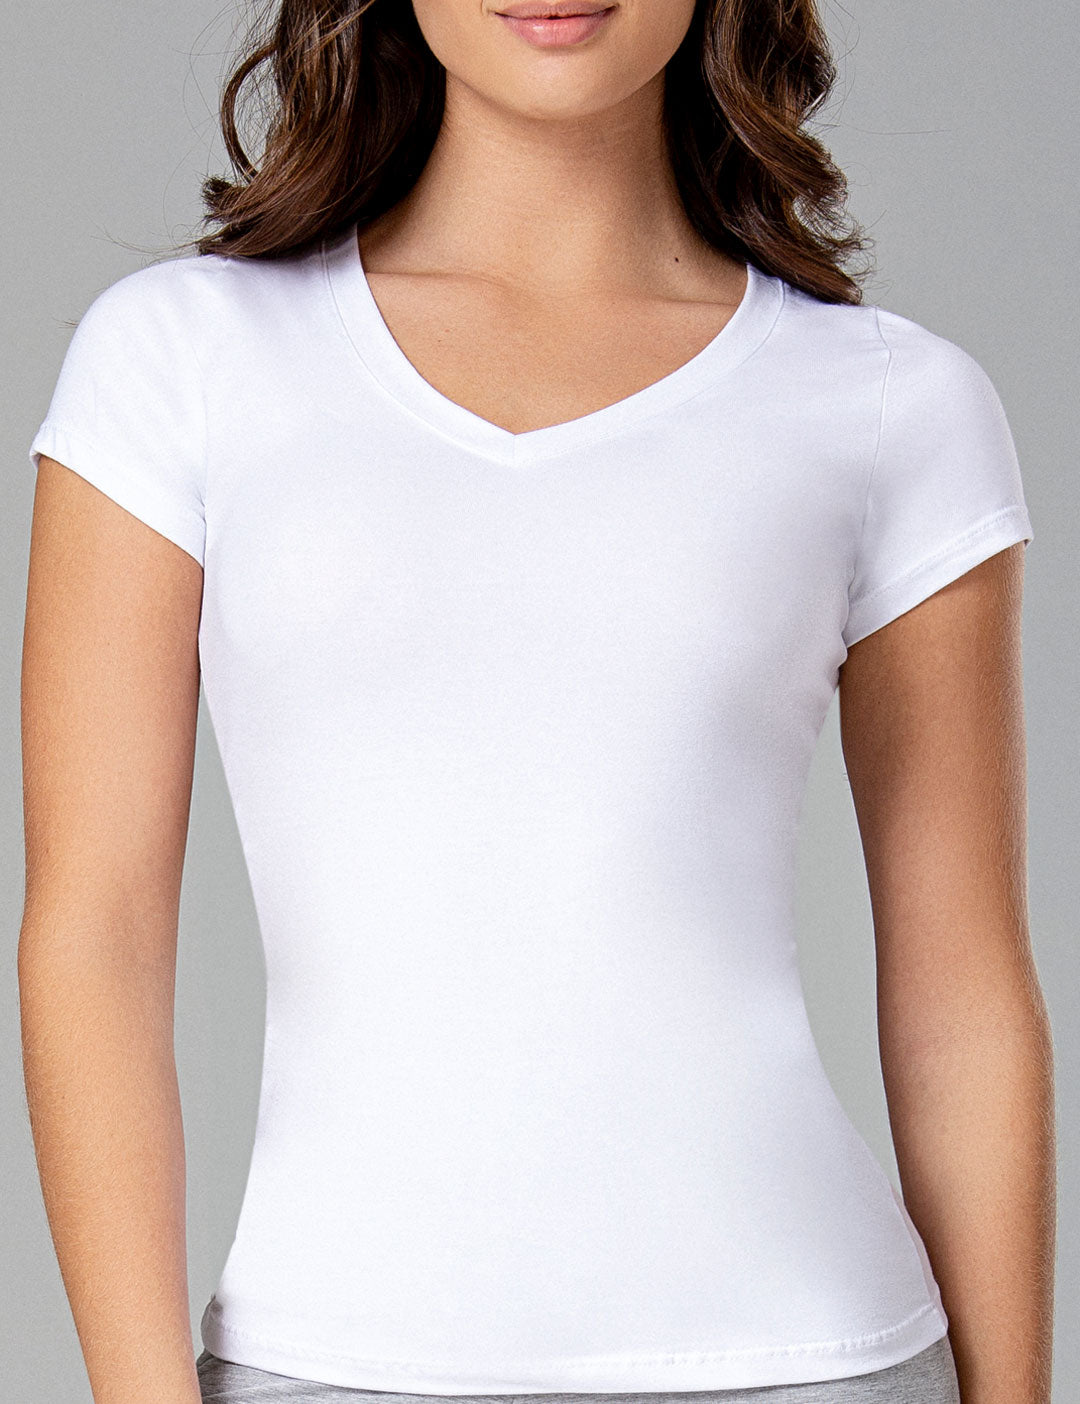 Camisetas básicas blancas según tu silueta: ¿cuál es la que más te